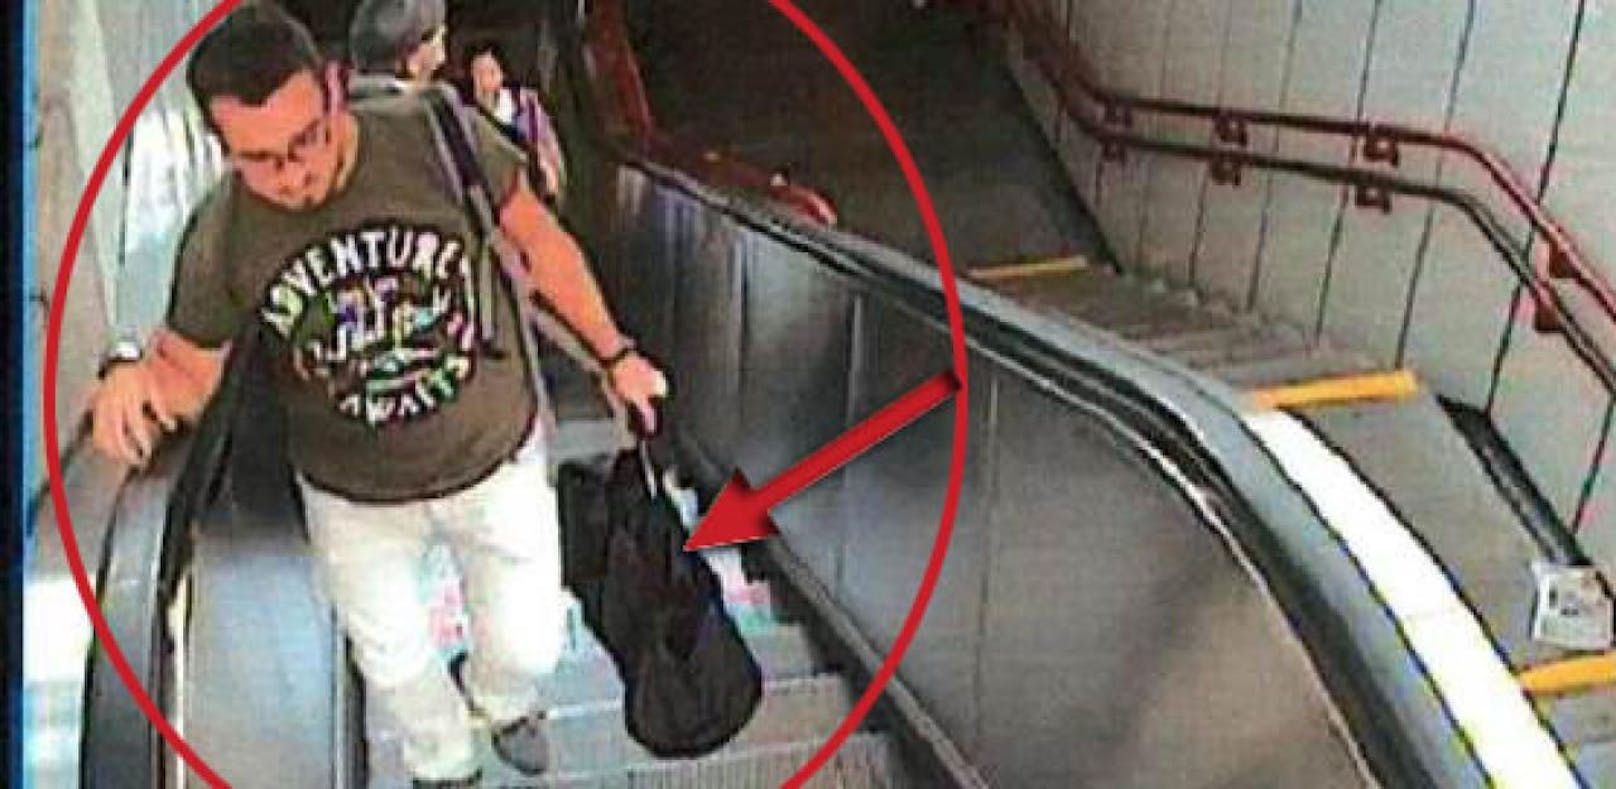 Verdächtiger mit Geldtasche: Wer erkennt diesen Mann?